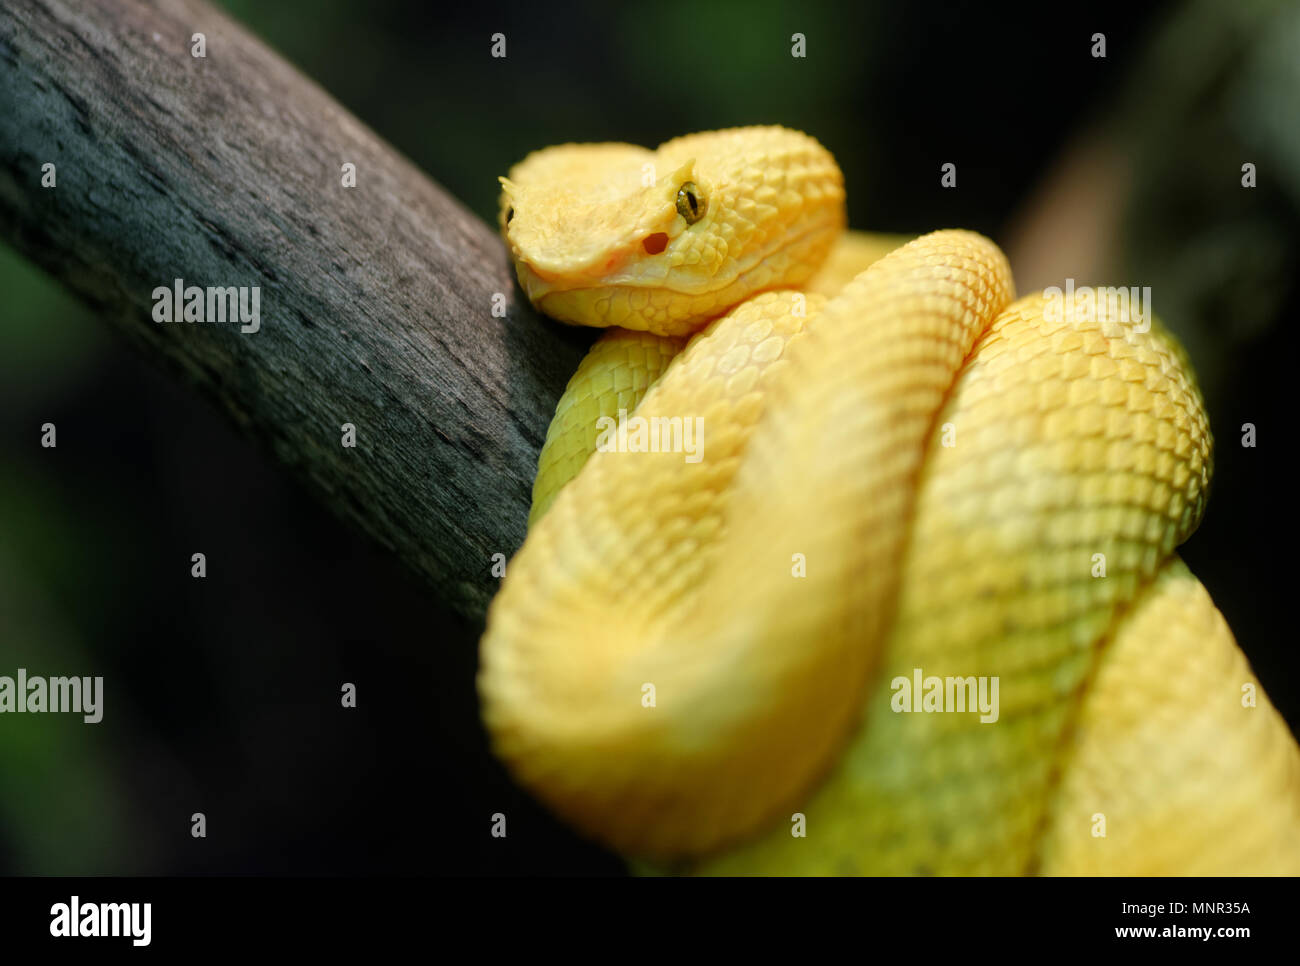 Tiere: gelb Wimpern Viper (Testudo schlegelii) auf einem Ast, closeup Schuß Stockfoto